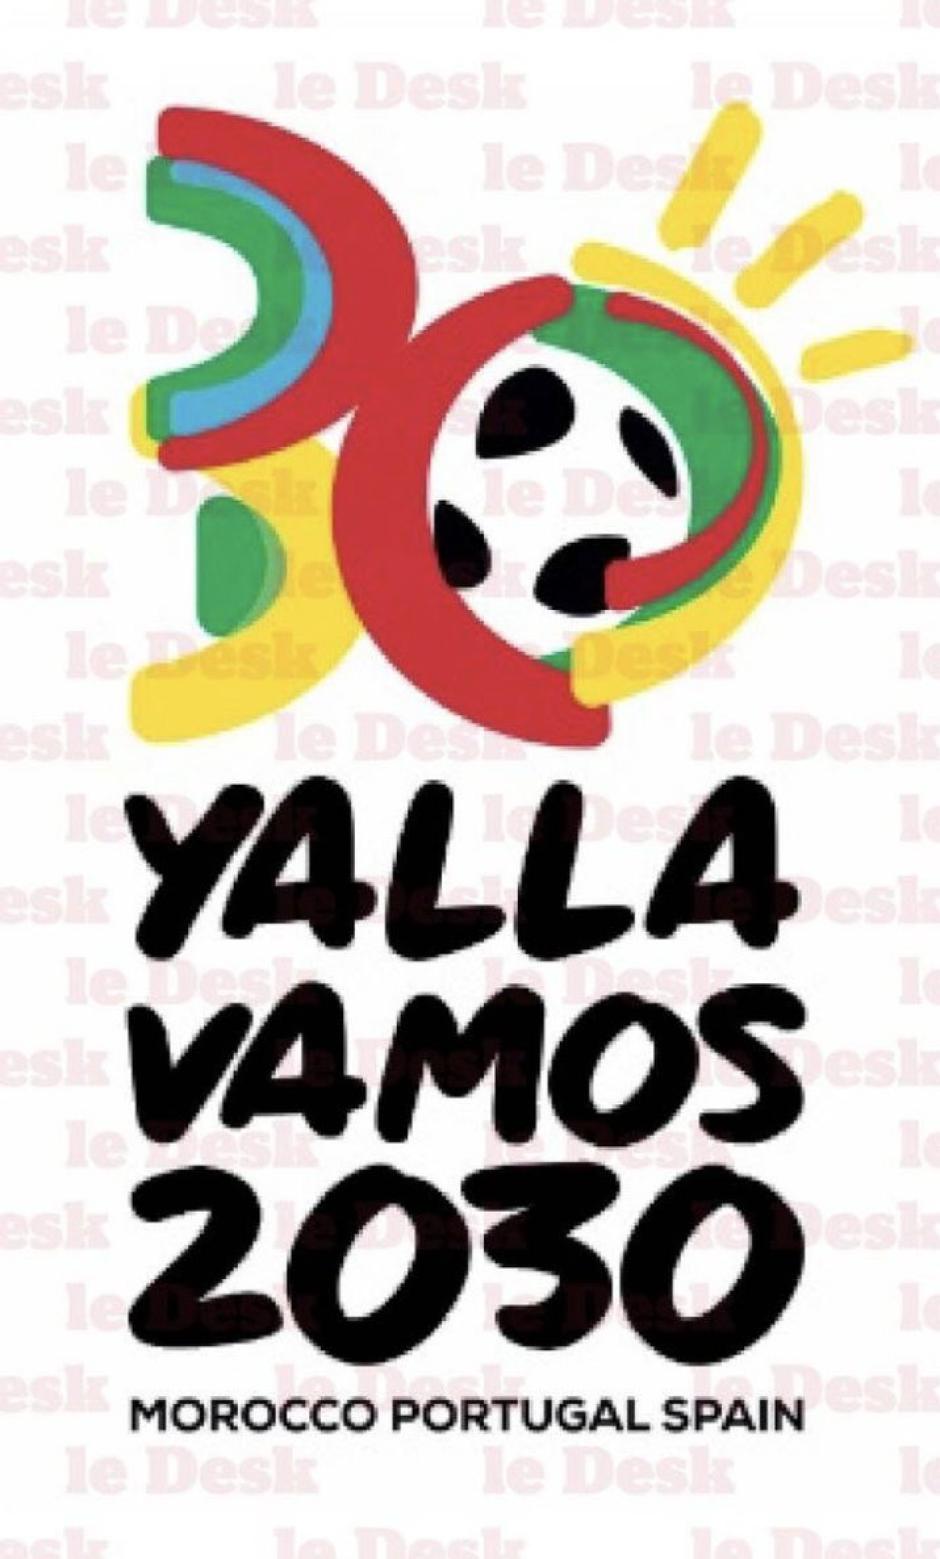 El logo del Mundial 2030 filtrado por la prensa de Marruecos